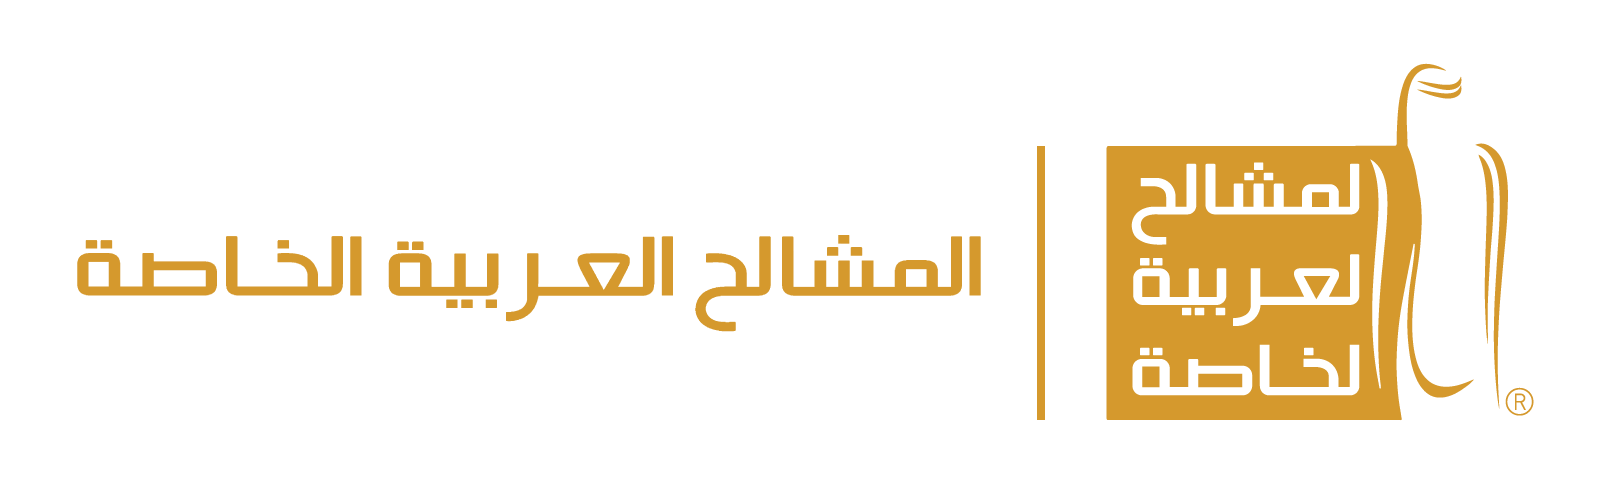 المشالح العربية الخاصة Logo